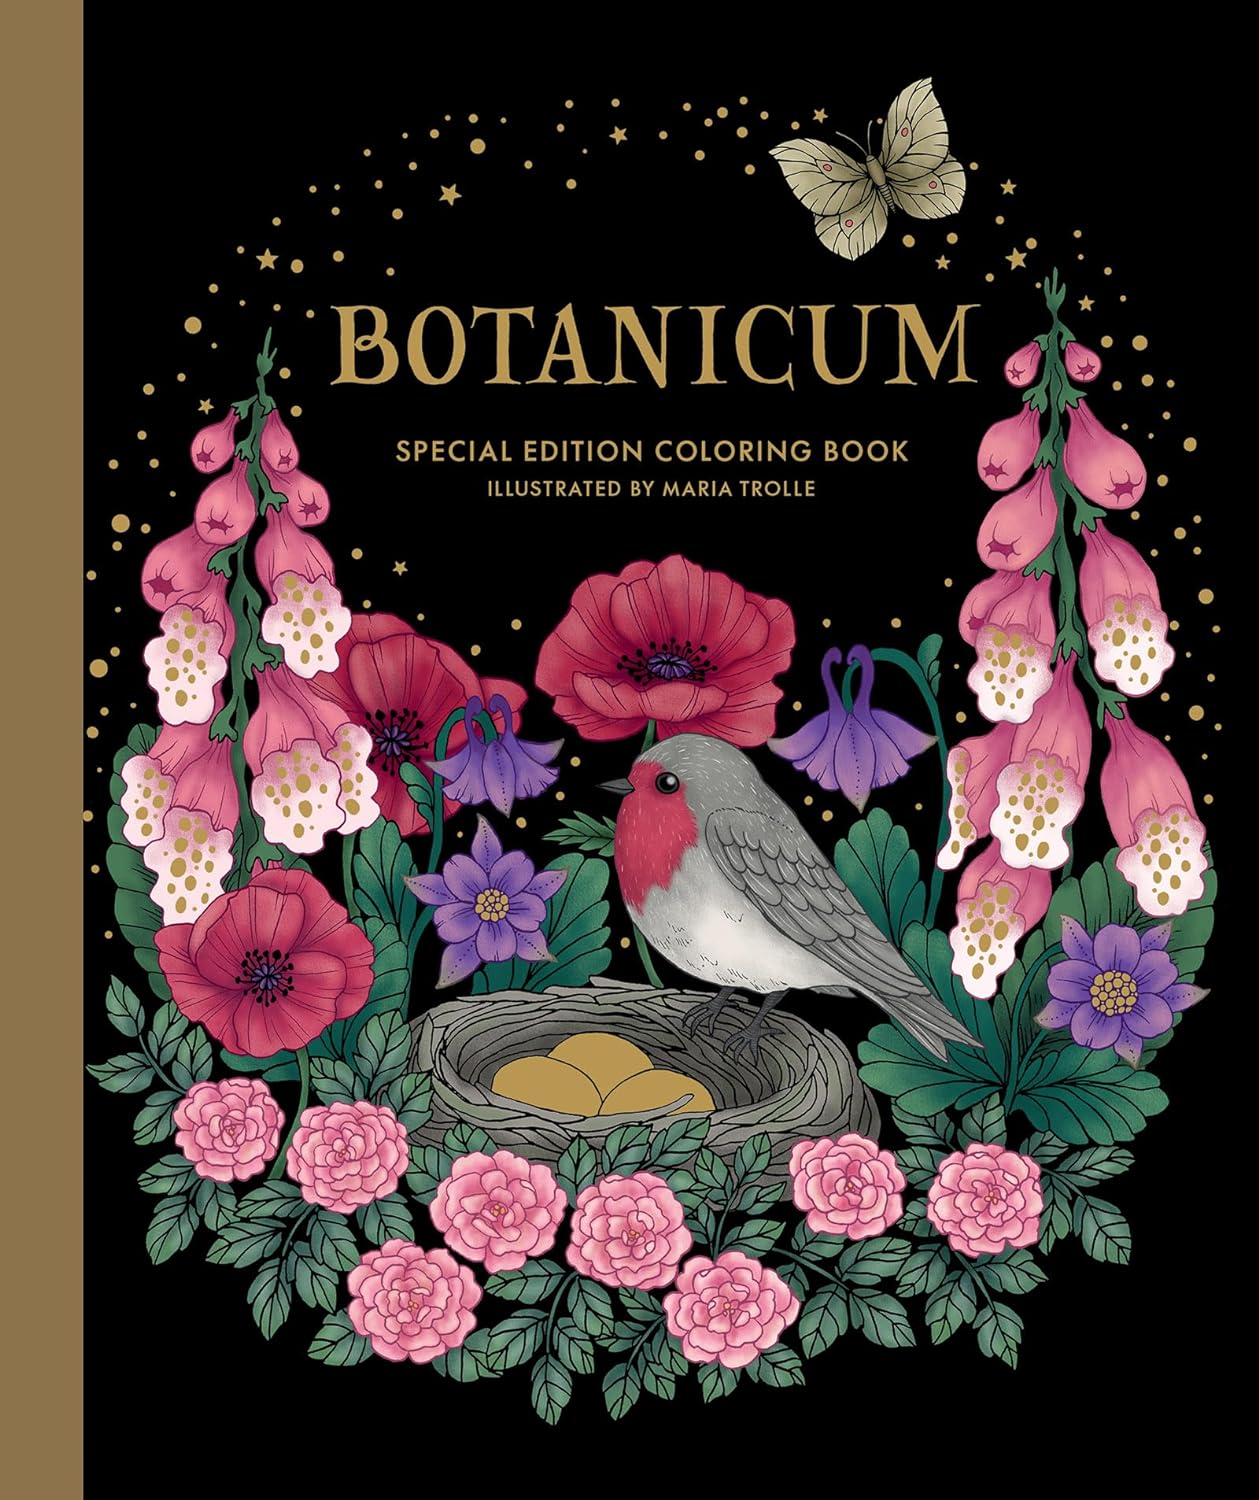 Botanicum Special Edition Coloring Book